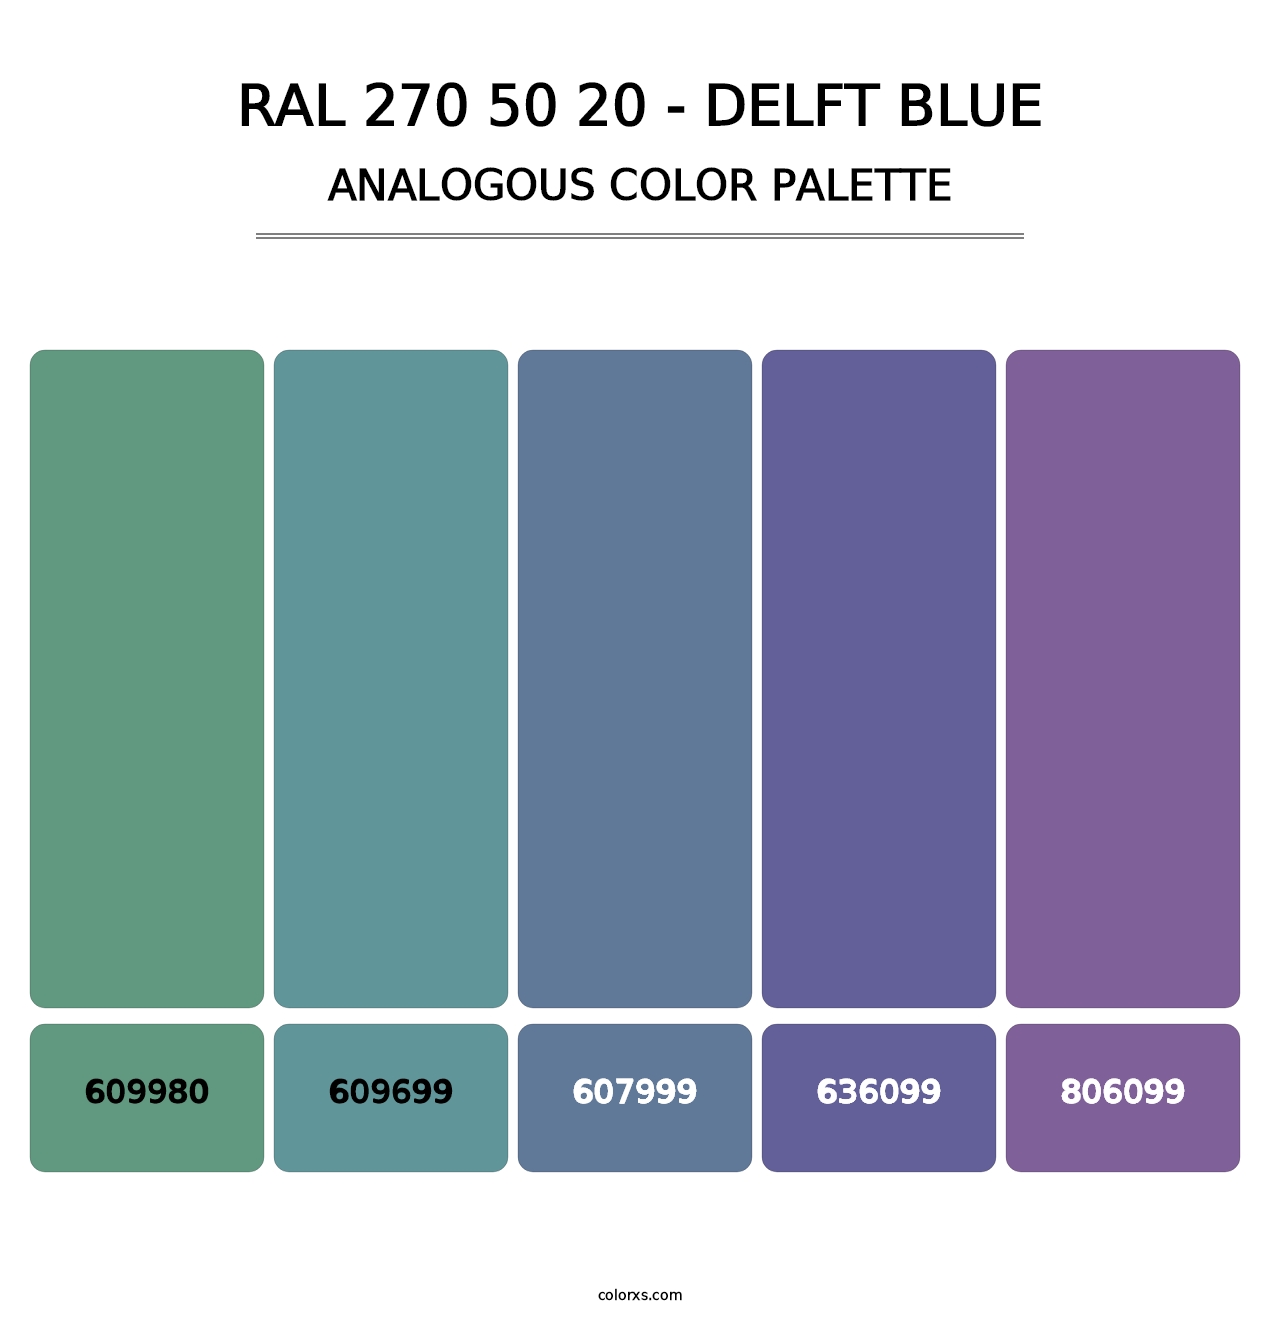 RAL 270 50 20 - Delft Blue - Analogous Color Palette